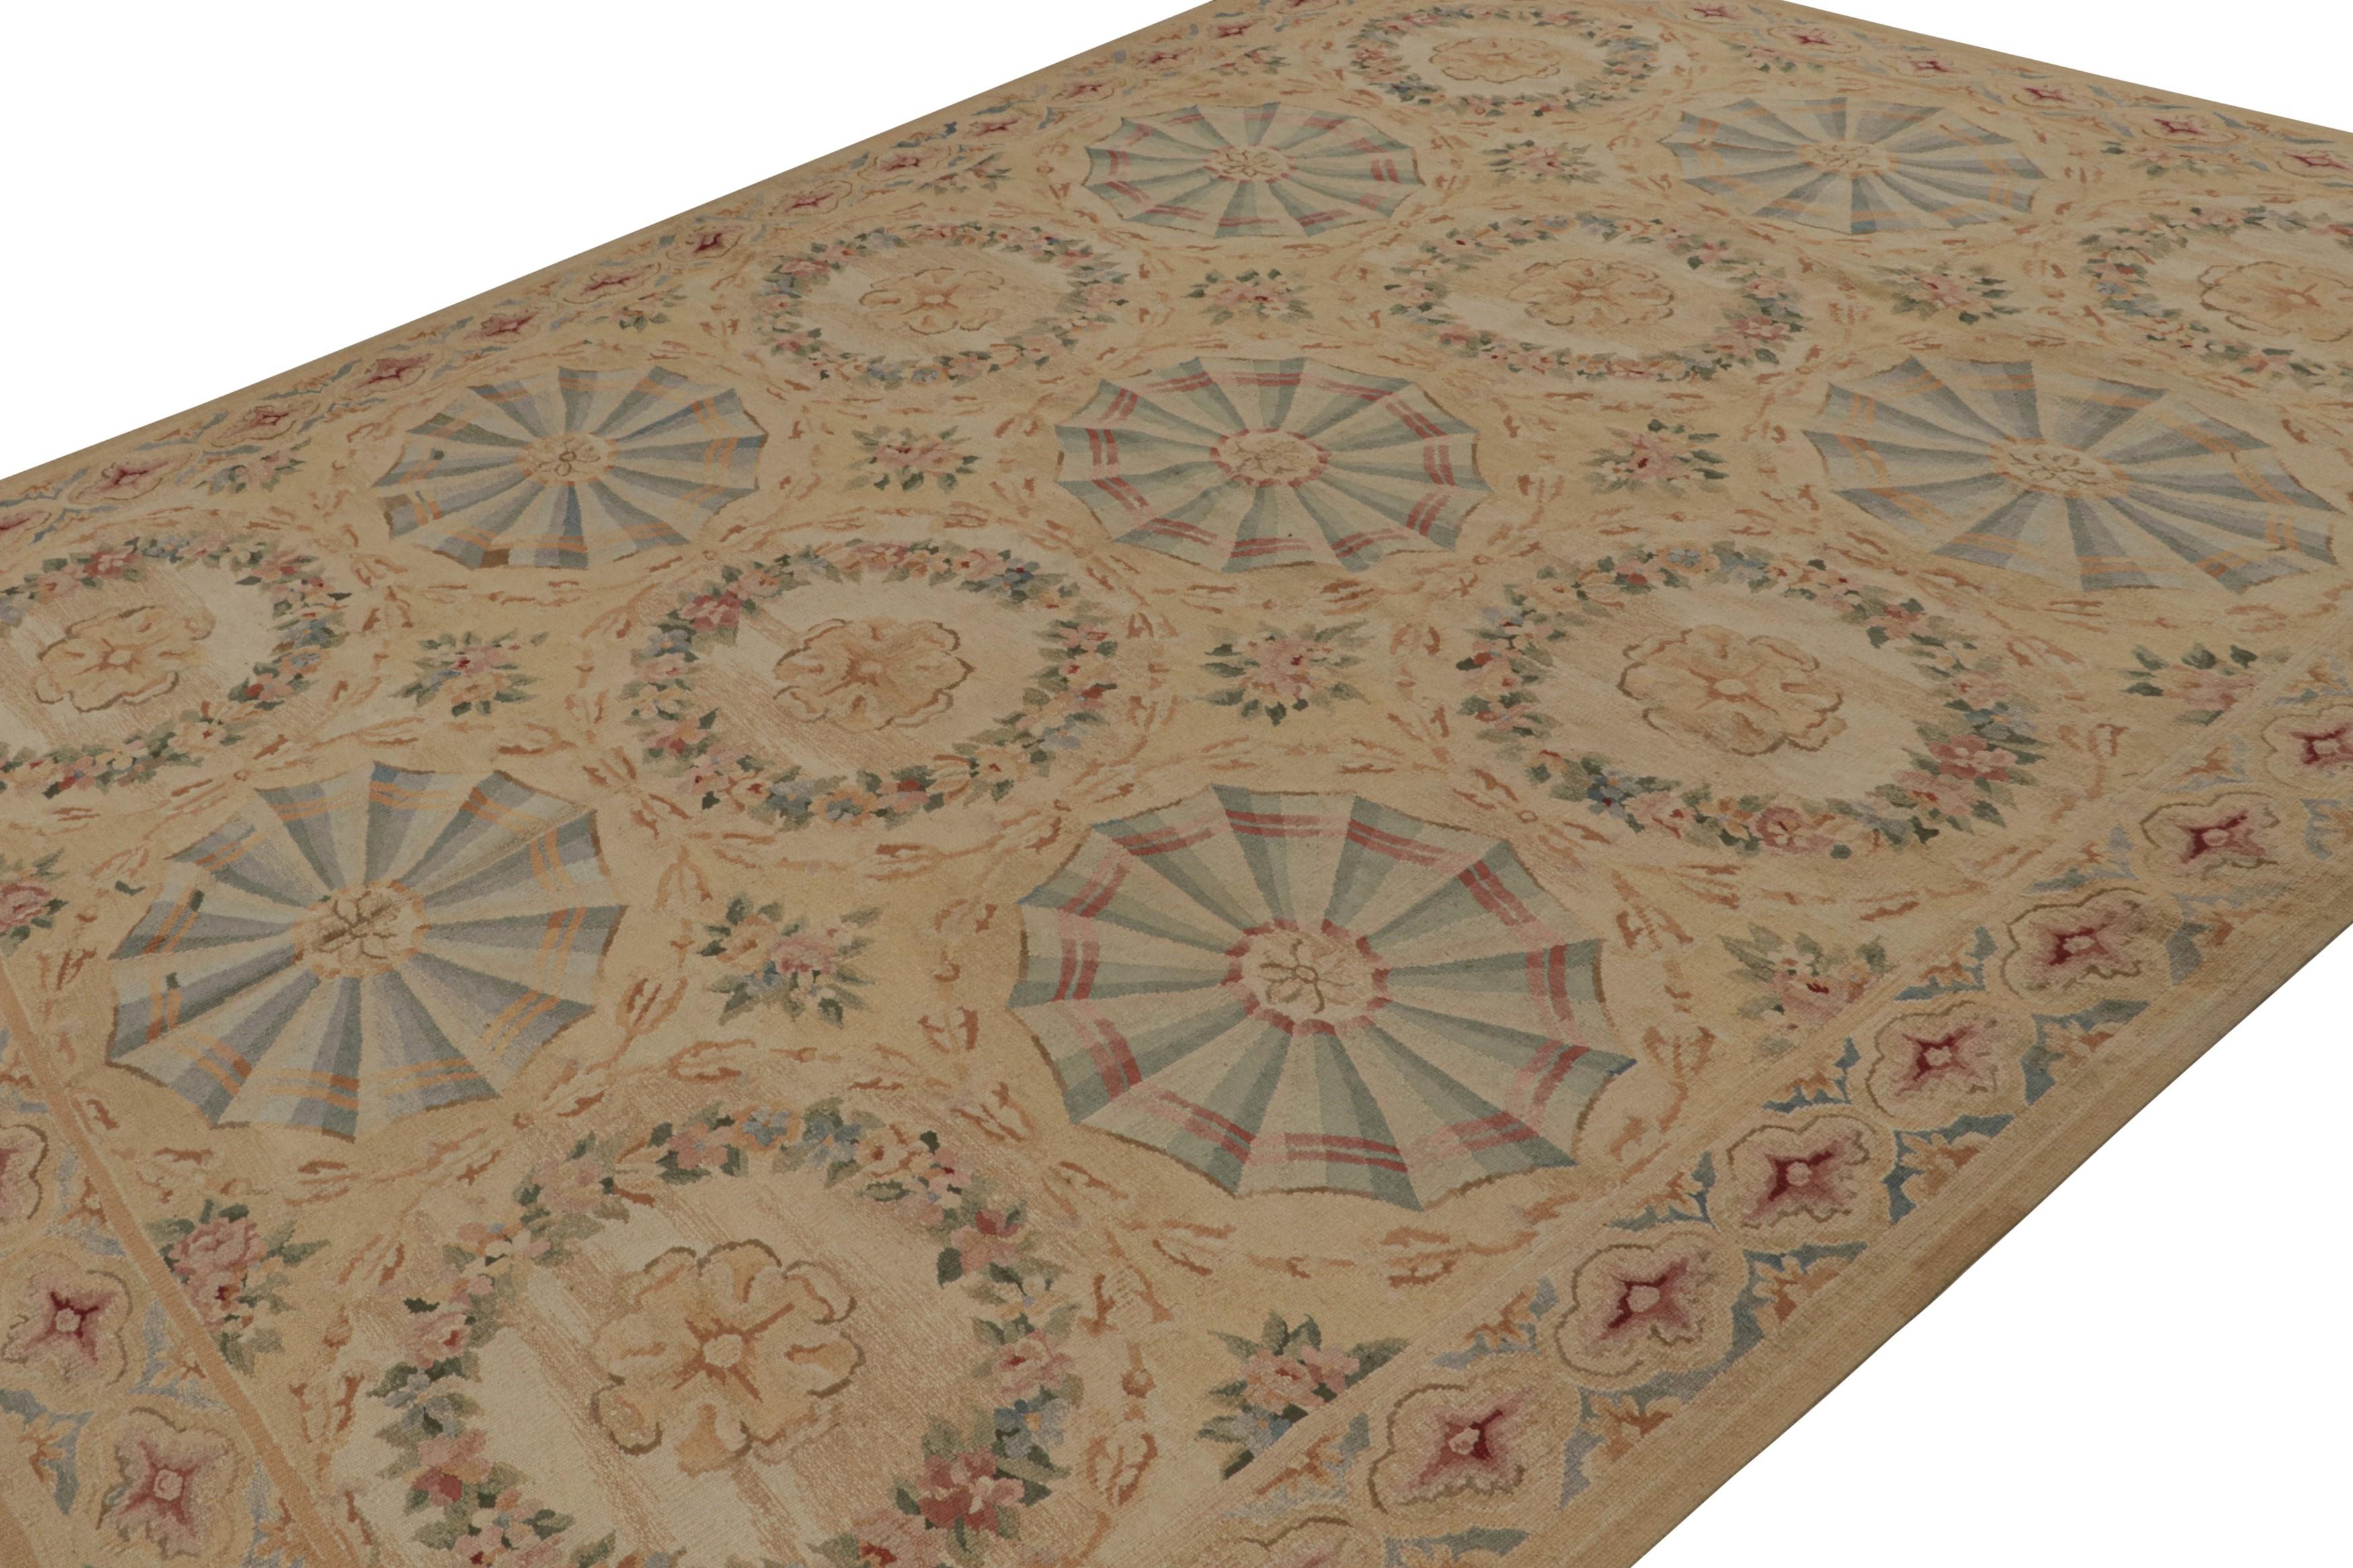 Dieser 9x12 Aubusson-Flachgewebe-Teppich in Braun ist aus Wolle handgewebt und zeigt farbenfrohe Blumenmuster und Medaillons, einige im Kartuschen-Stil und andere in Kränzen, in aktuellen Hellblau-, Rosa- und Grüntönen. 

Über das Design: 

Dieses